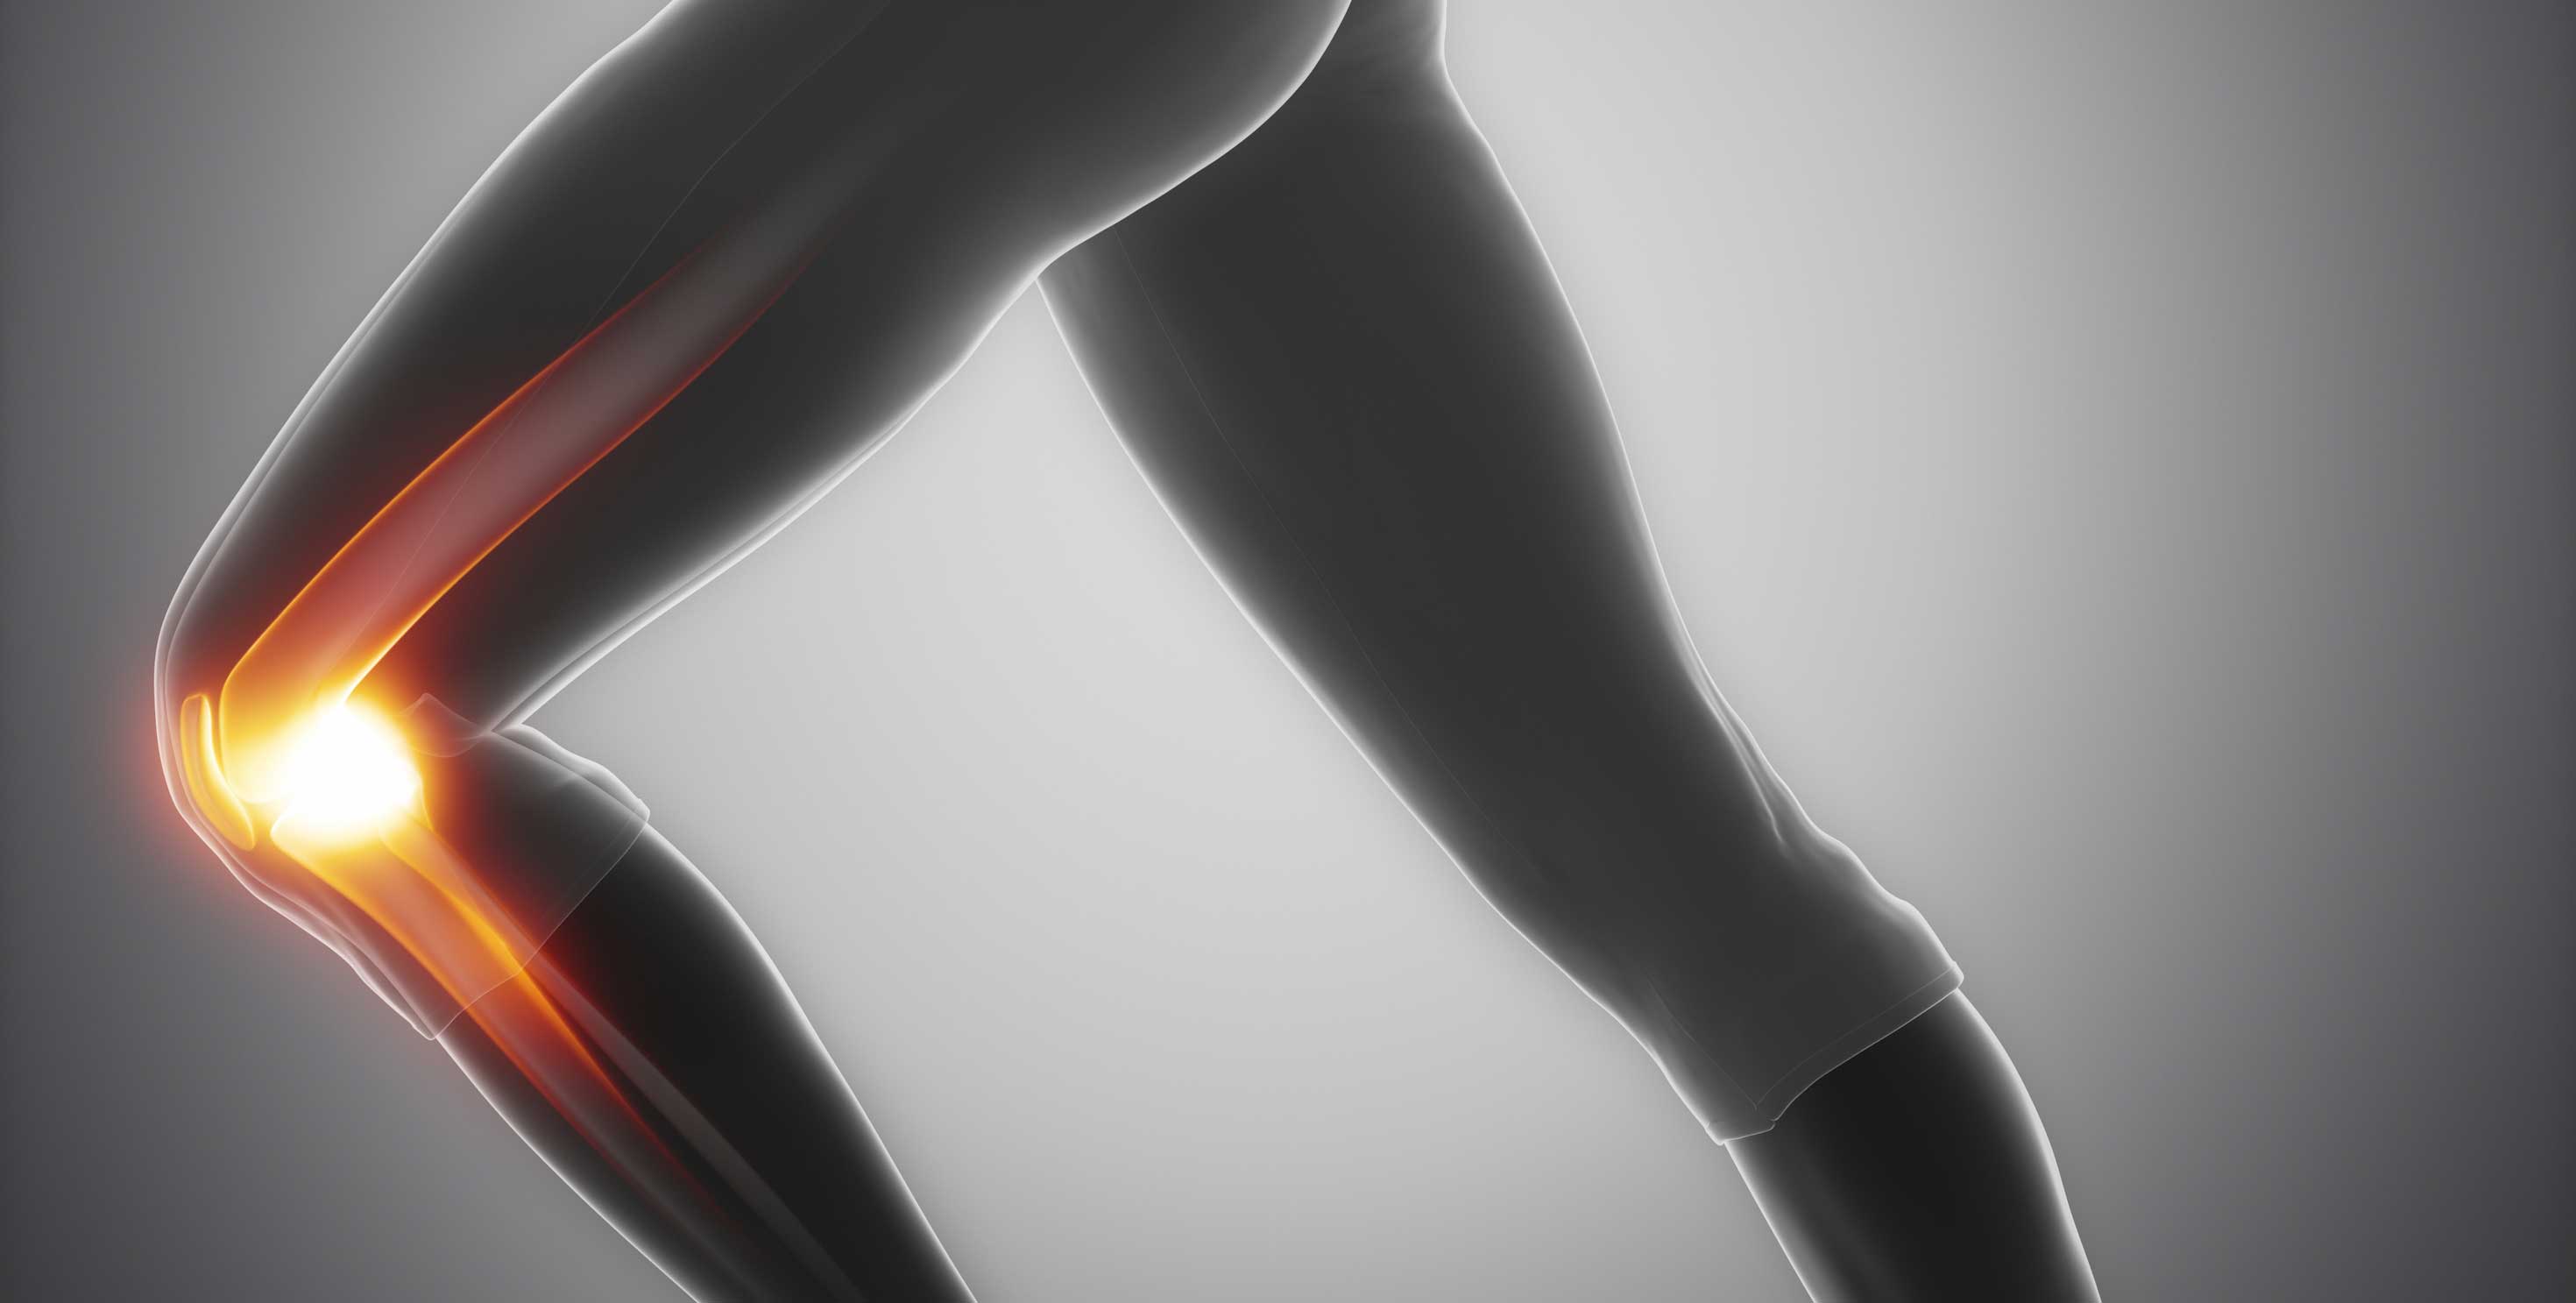 Image of leg with knee illuminated